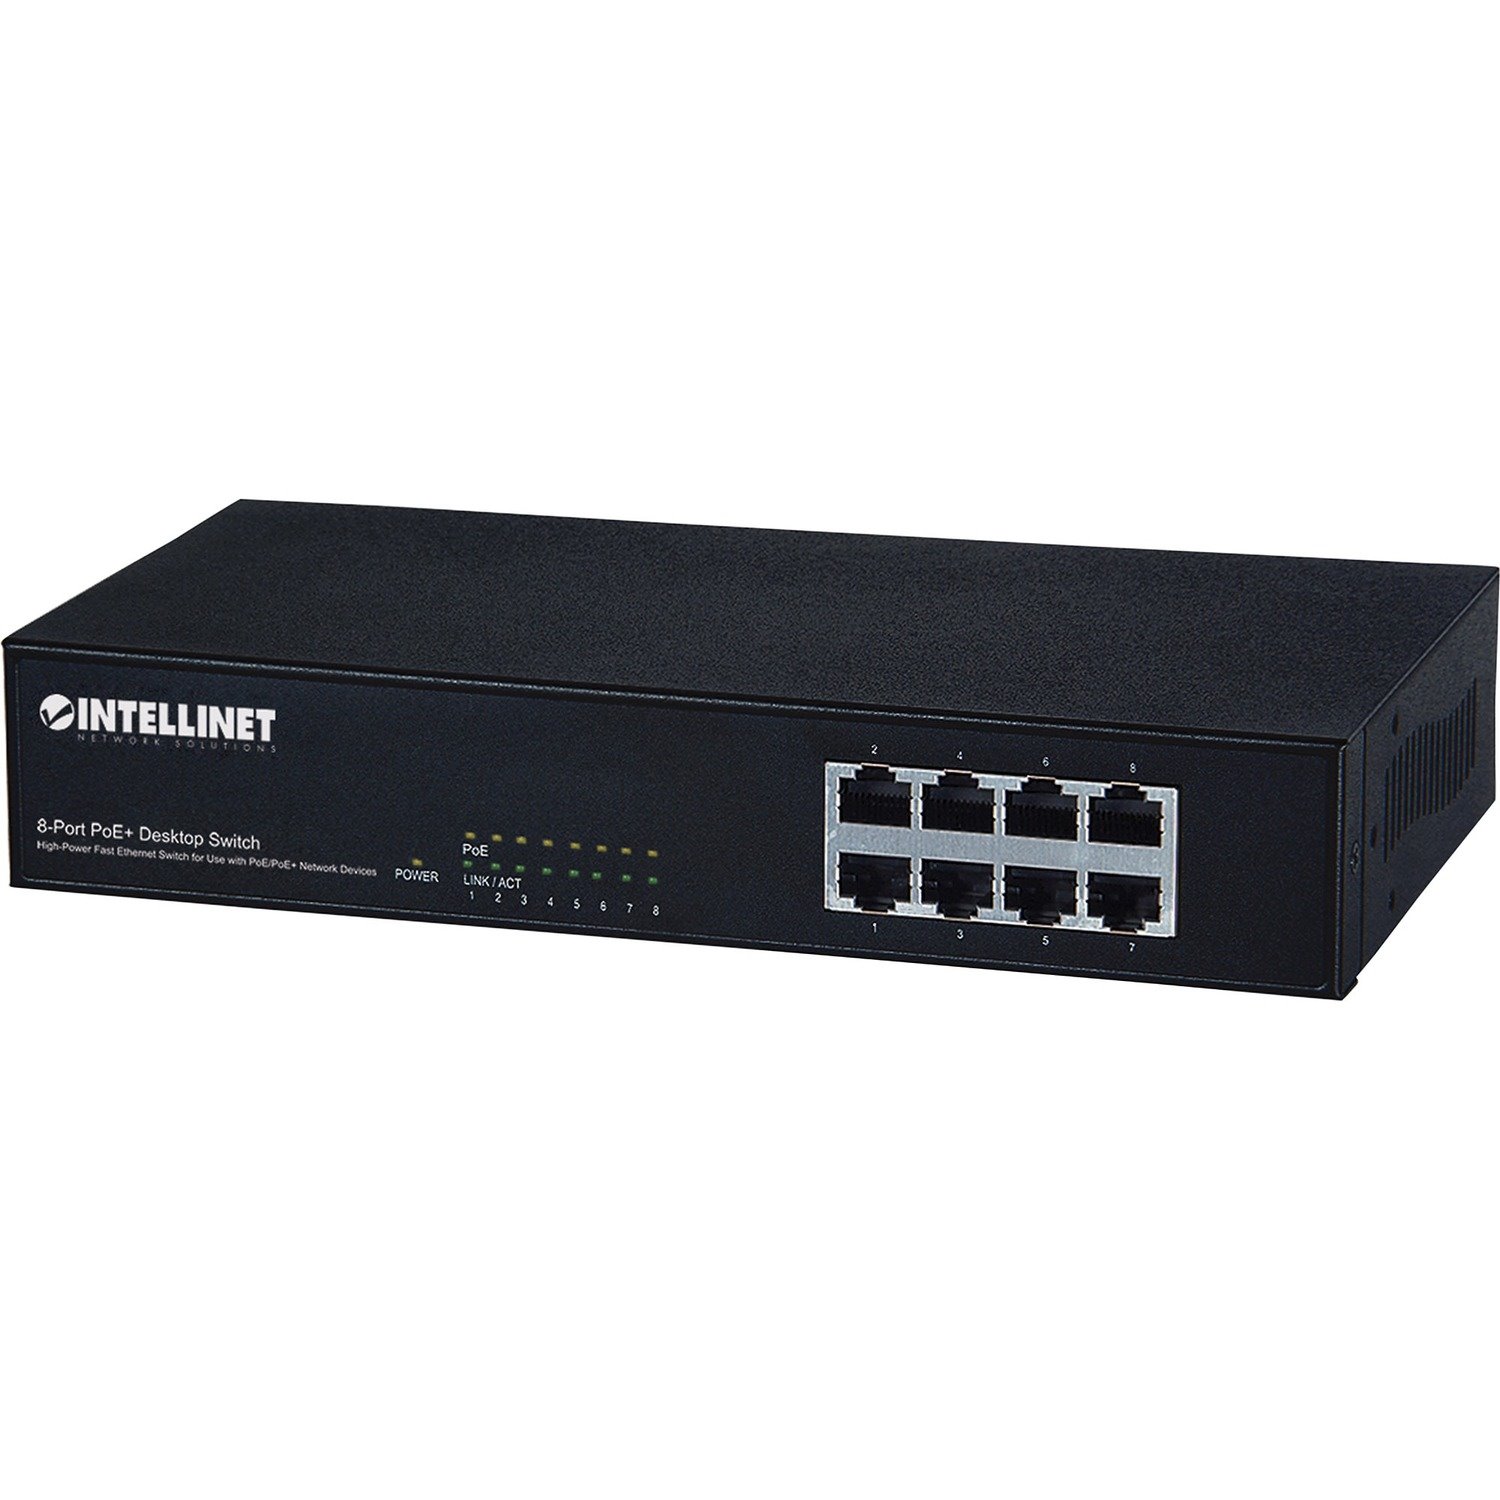 Intellinet 8-Port PoE+ Desktop Switch